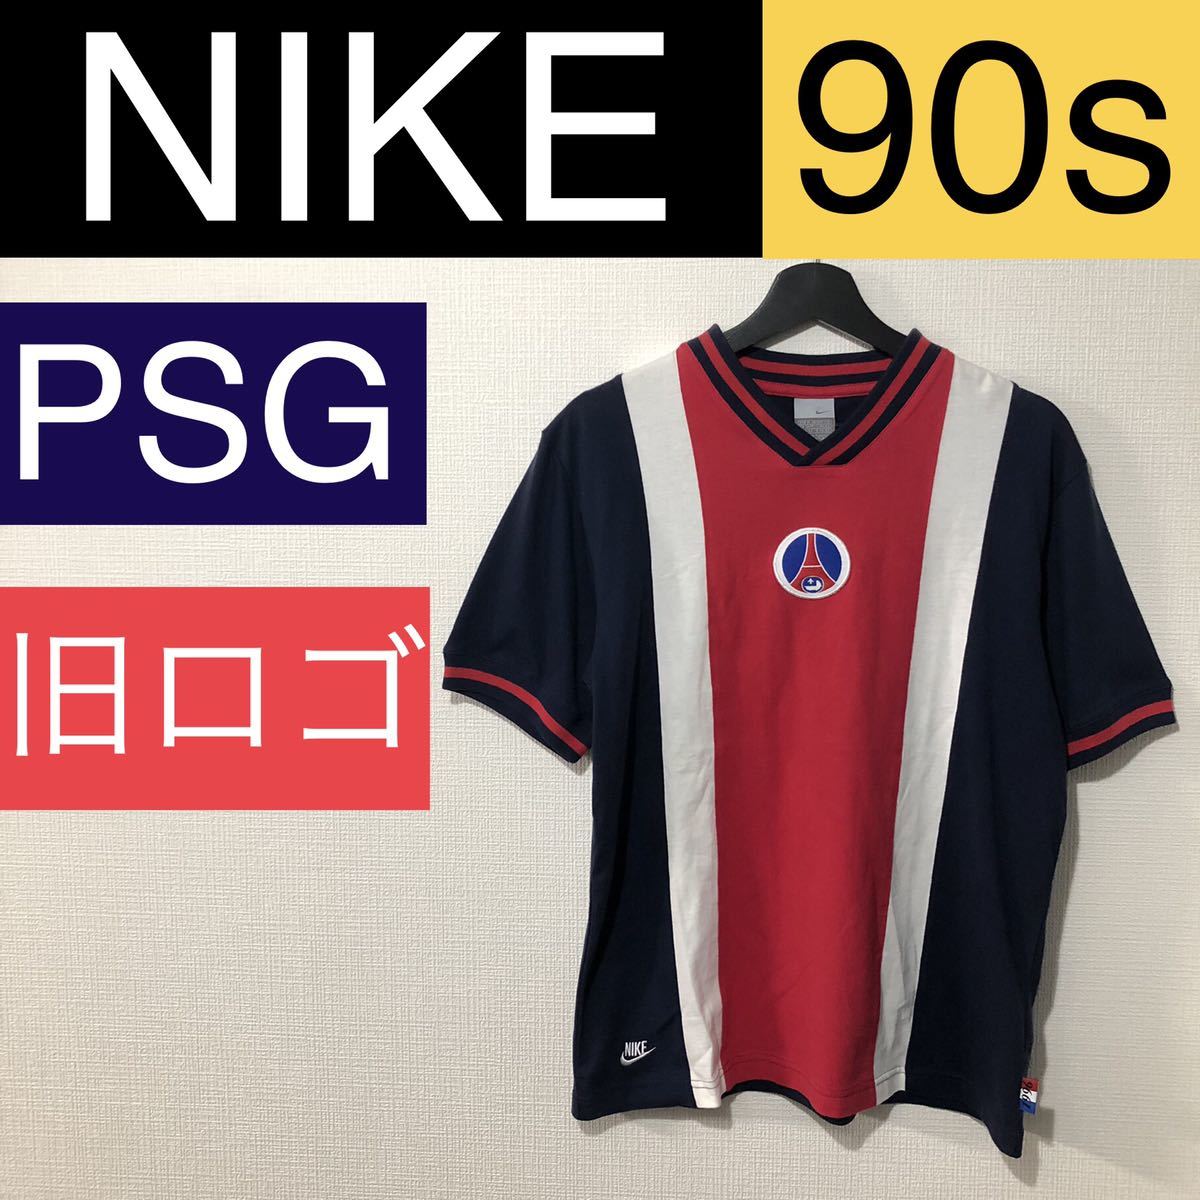 ナイキ NIKE 90s ビンテージ 旧ロゴ パリサンジェルマン PSG レア